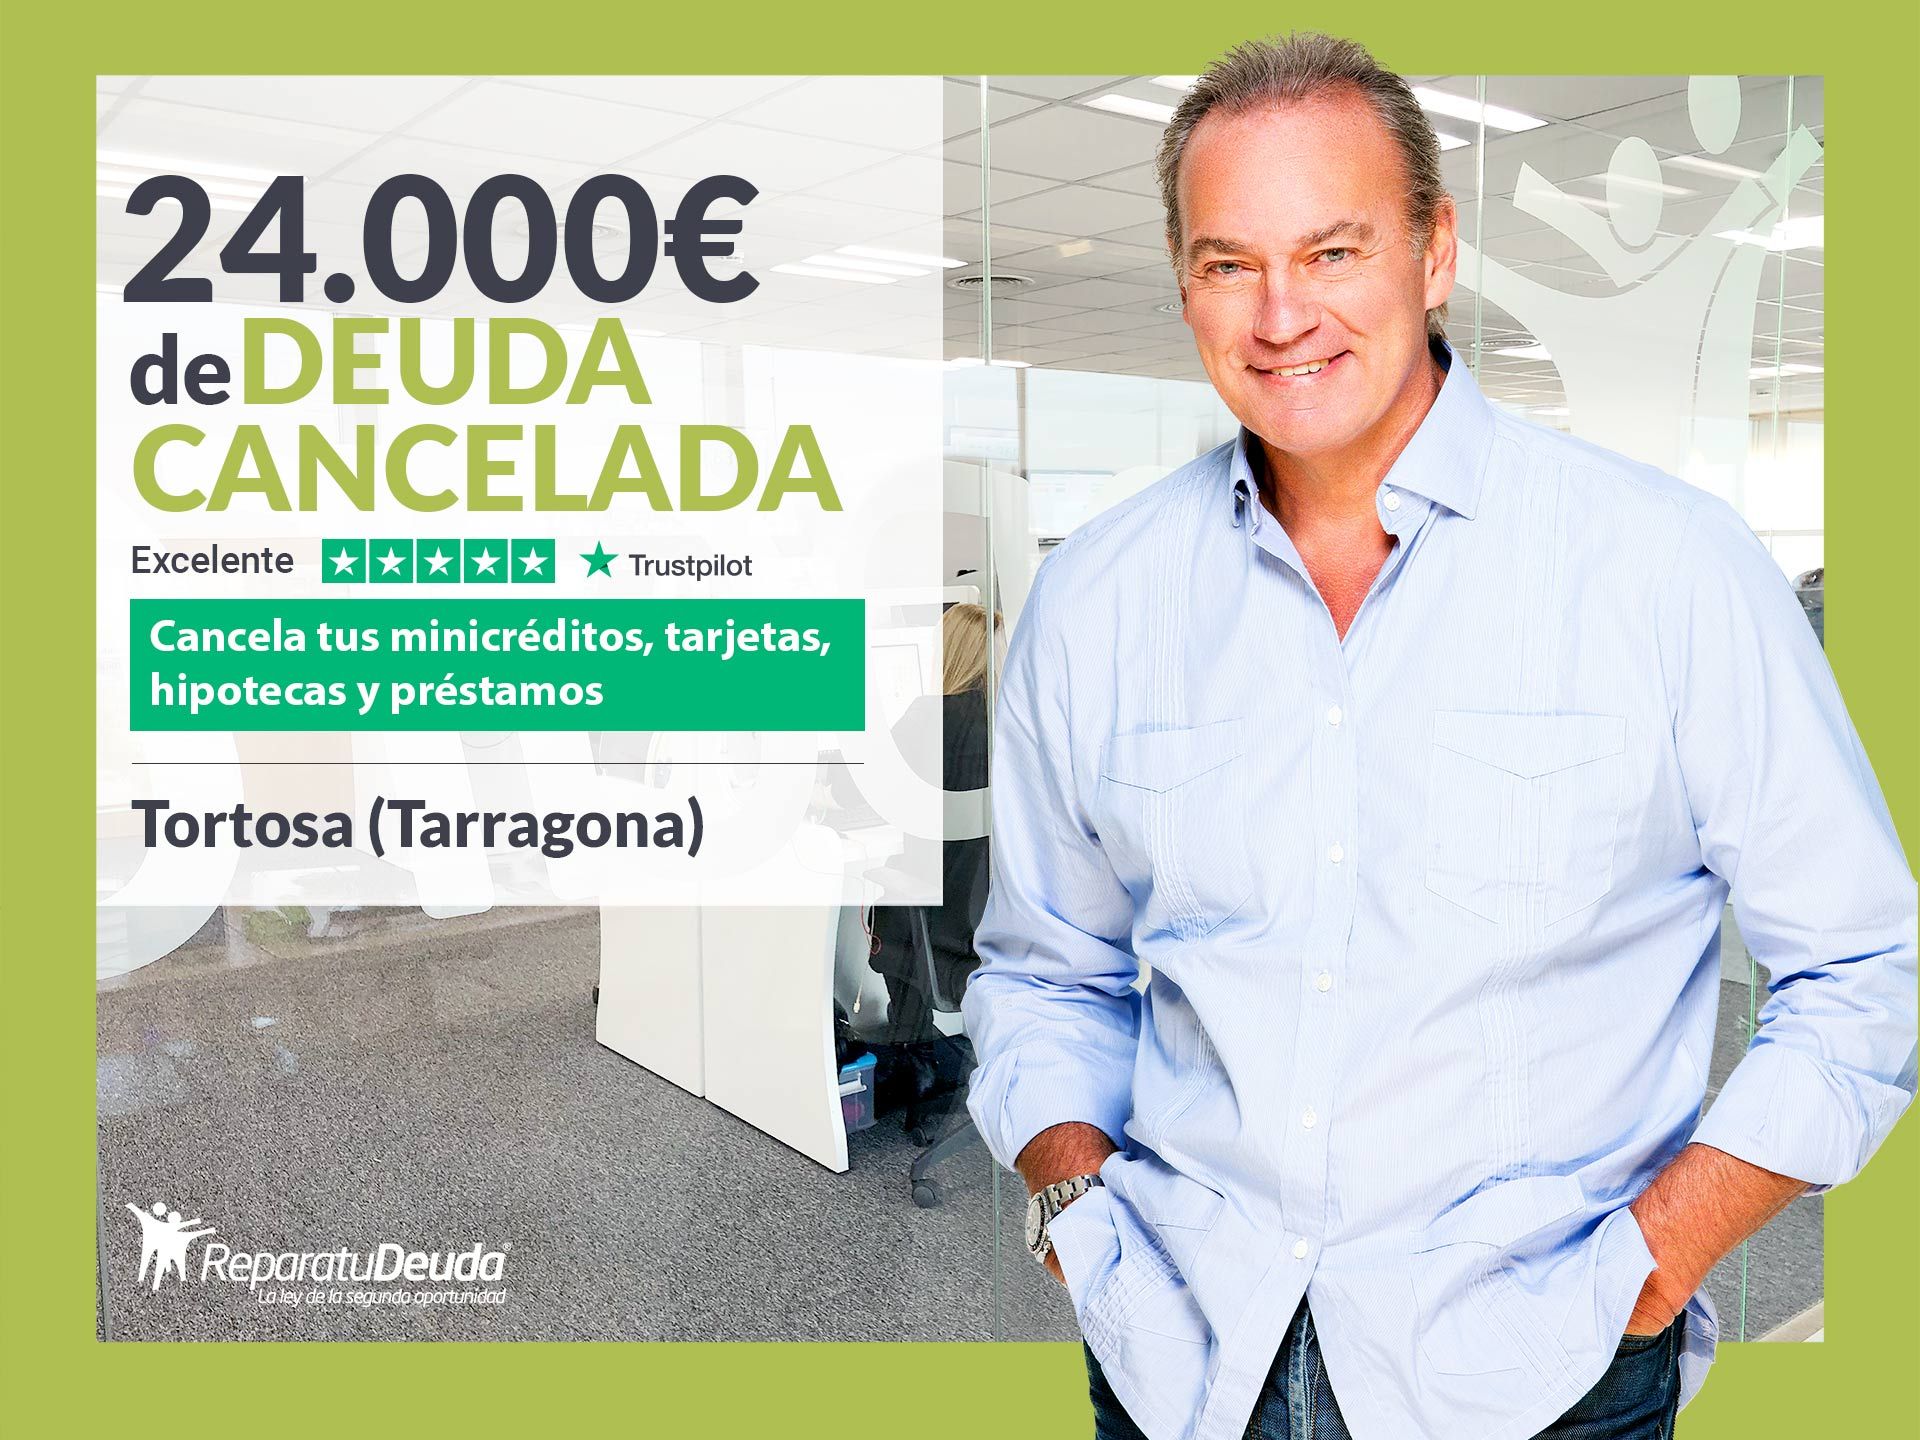 Repara tu Deuda Abogados cancela 24.000? en Tortosa (Tarragona) con la Ley de Segunda Oportunidad